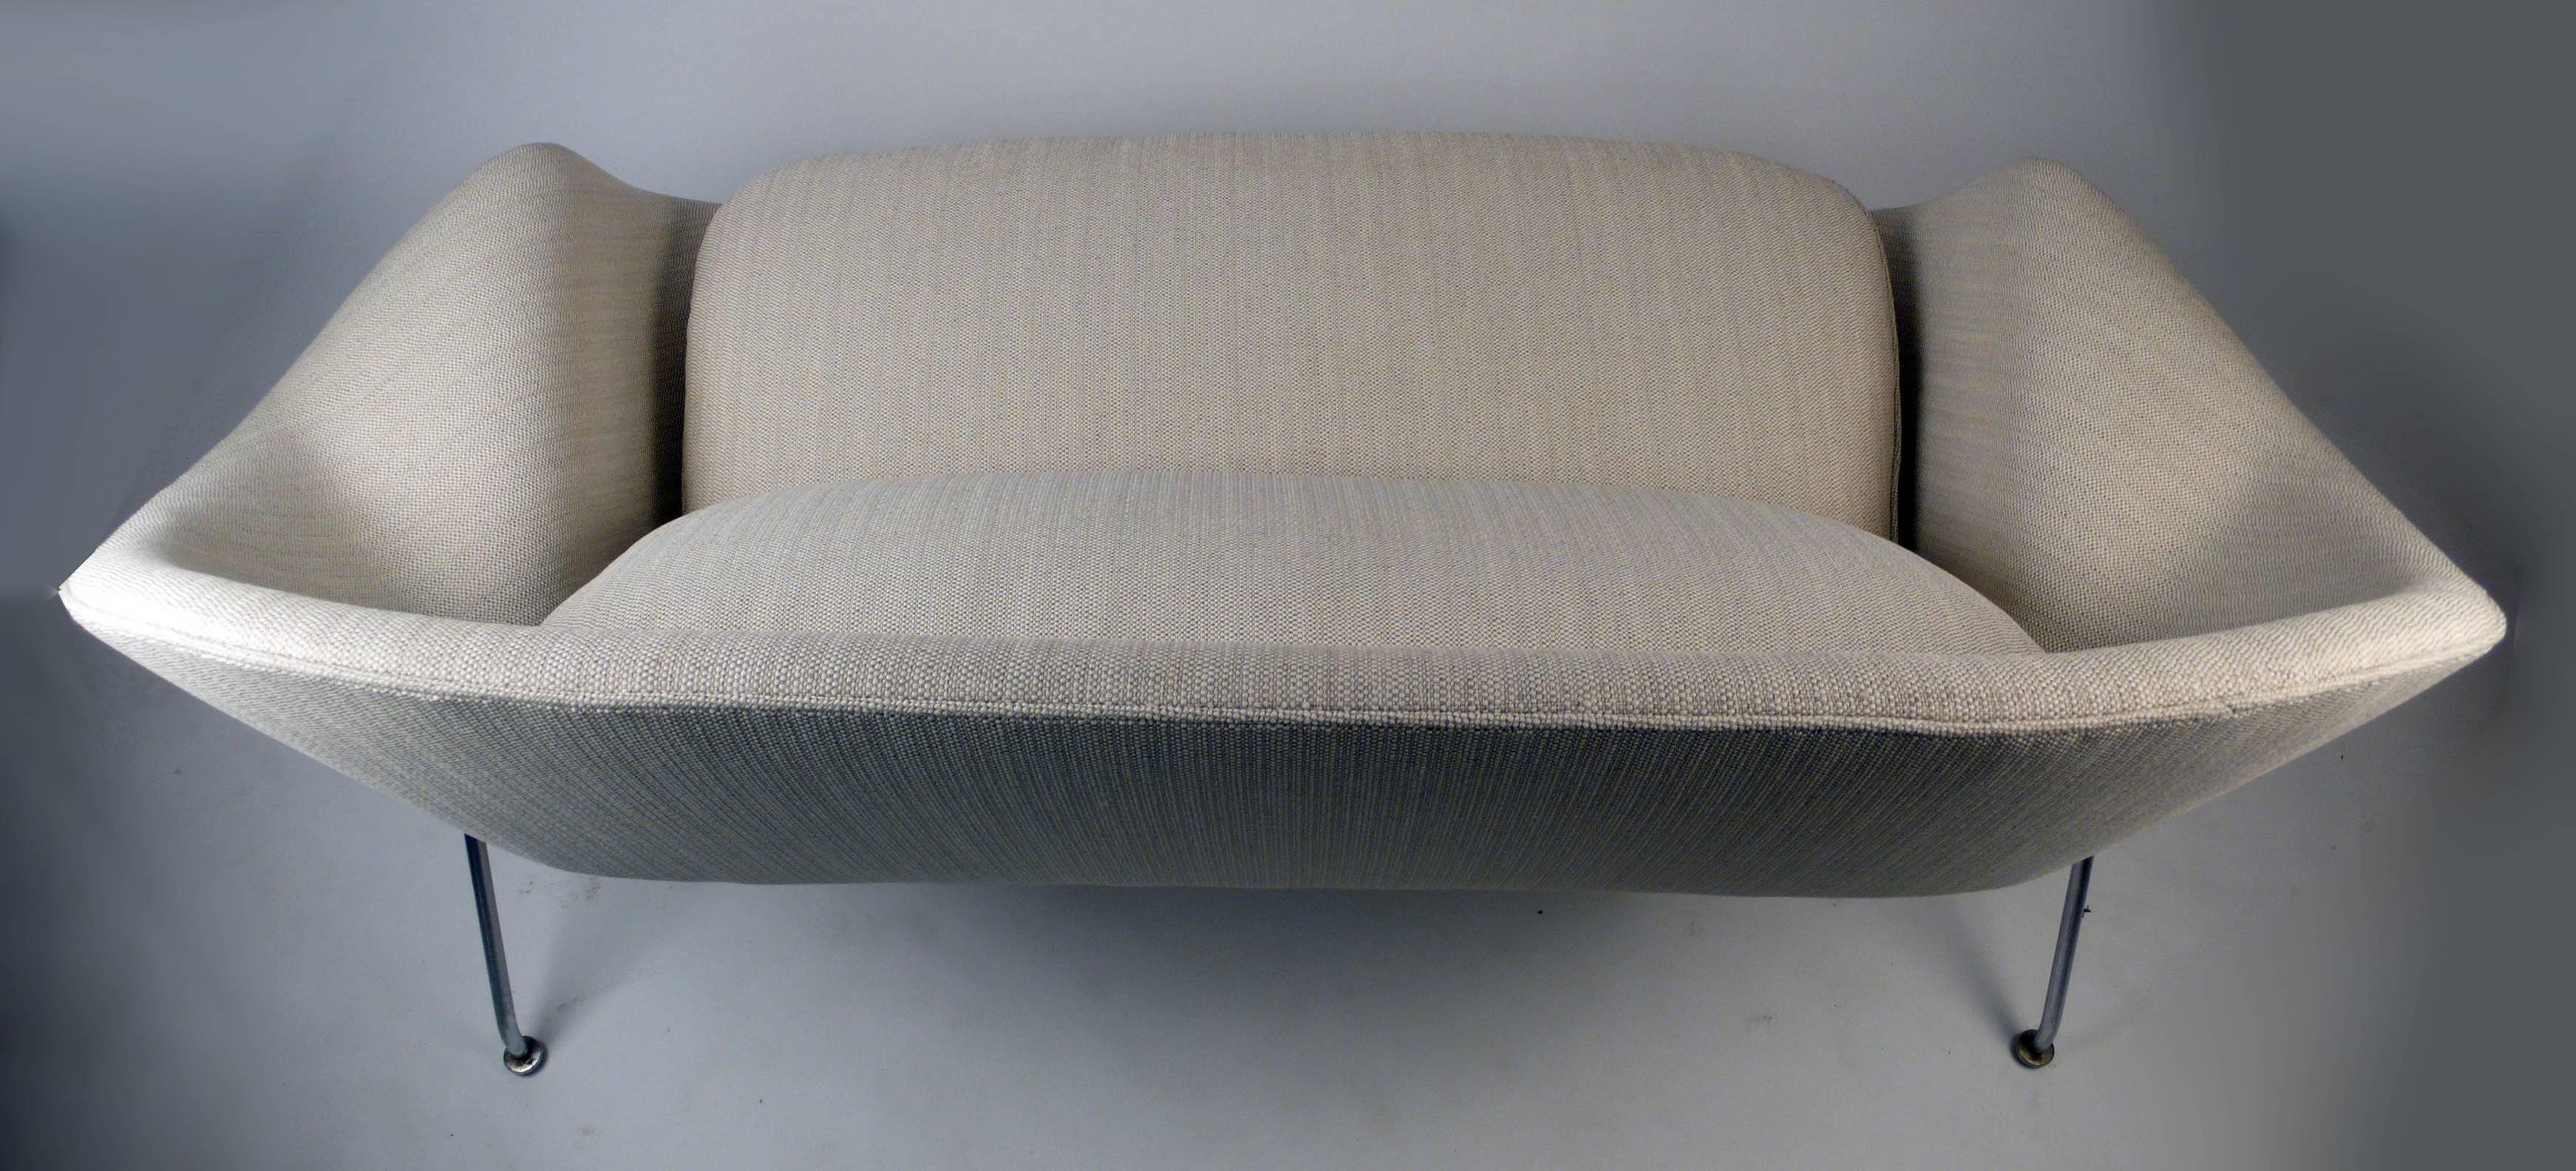 American Womb Sofa by Eero Saarinen for Knoll